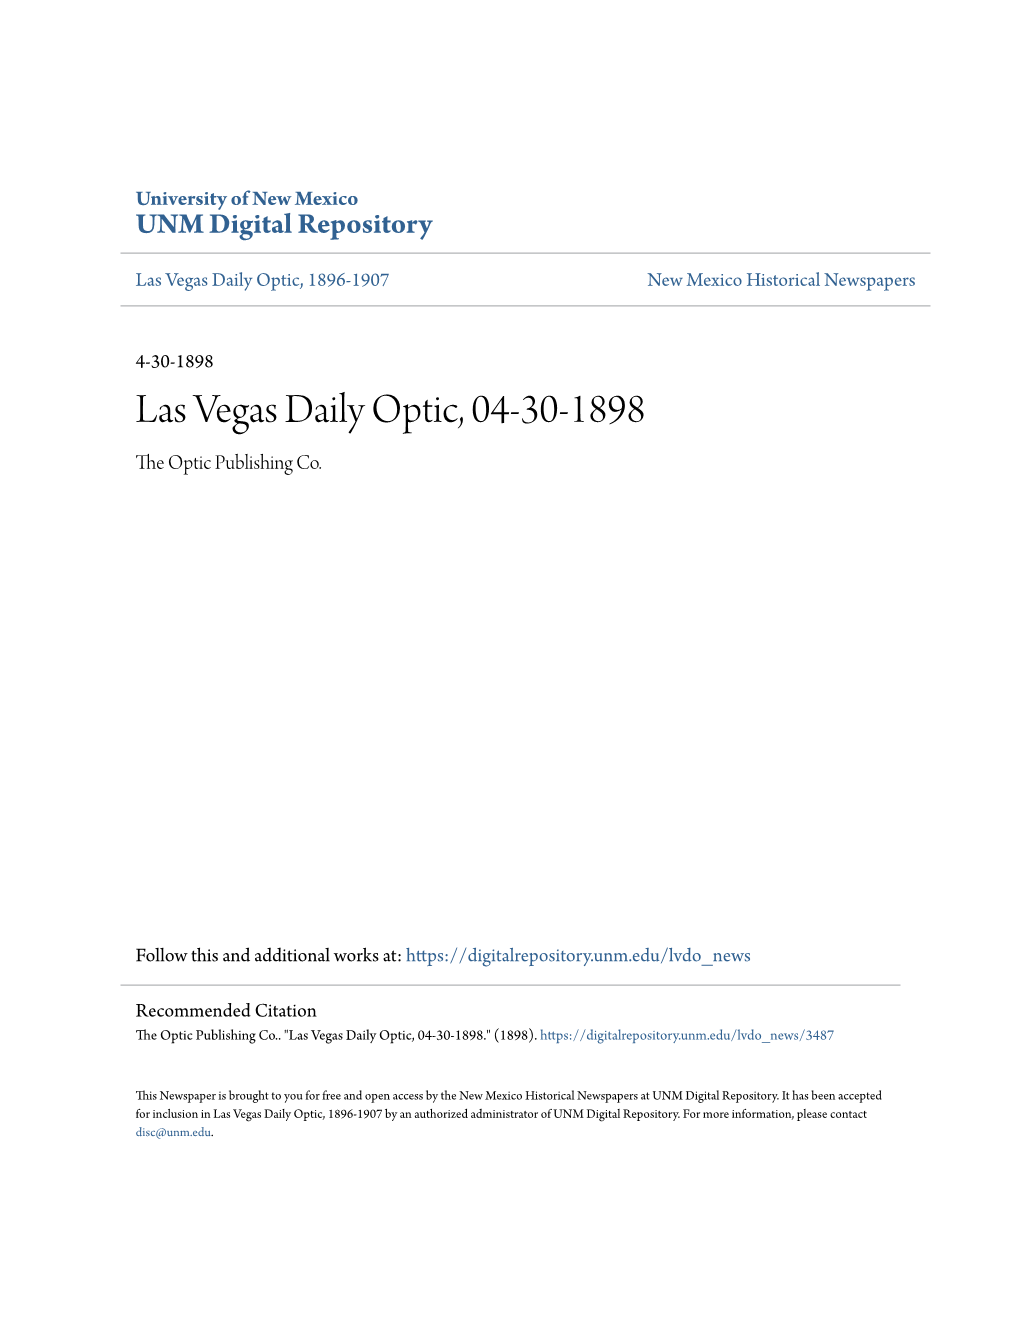 Las Vegas Daily Optic, 04-30-1898 the Optic Publishing Co